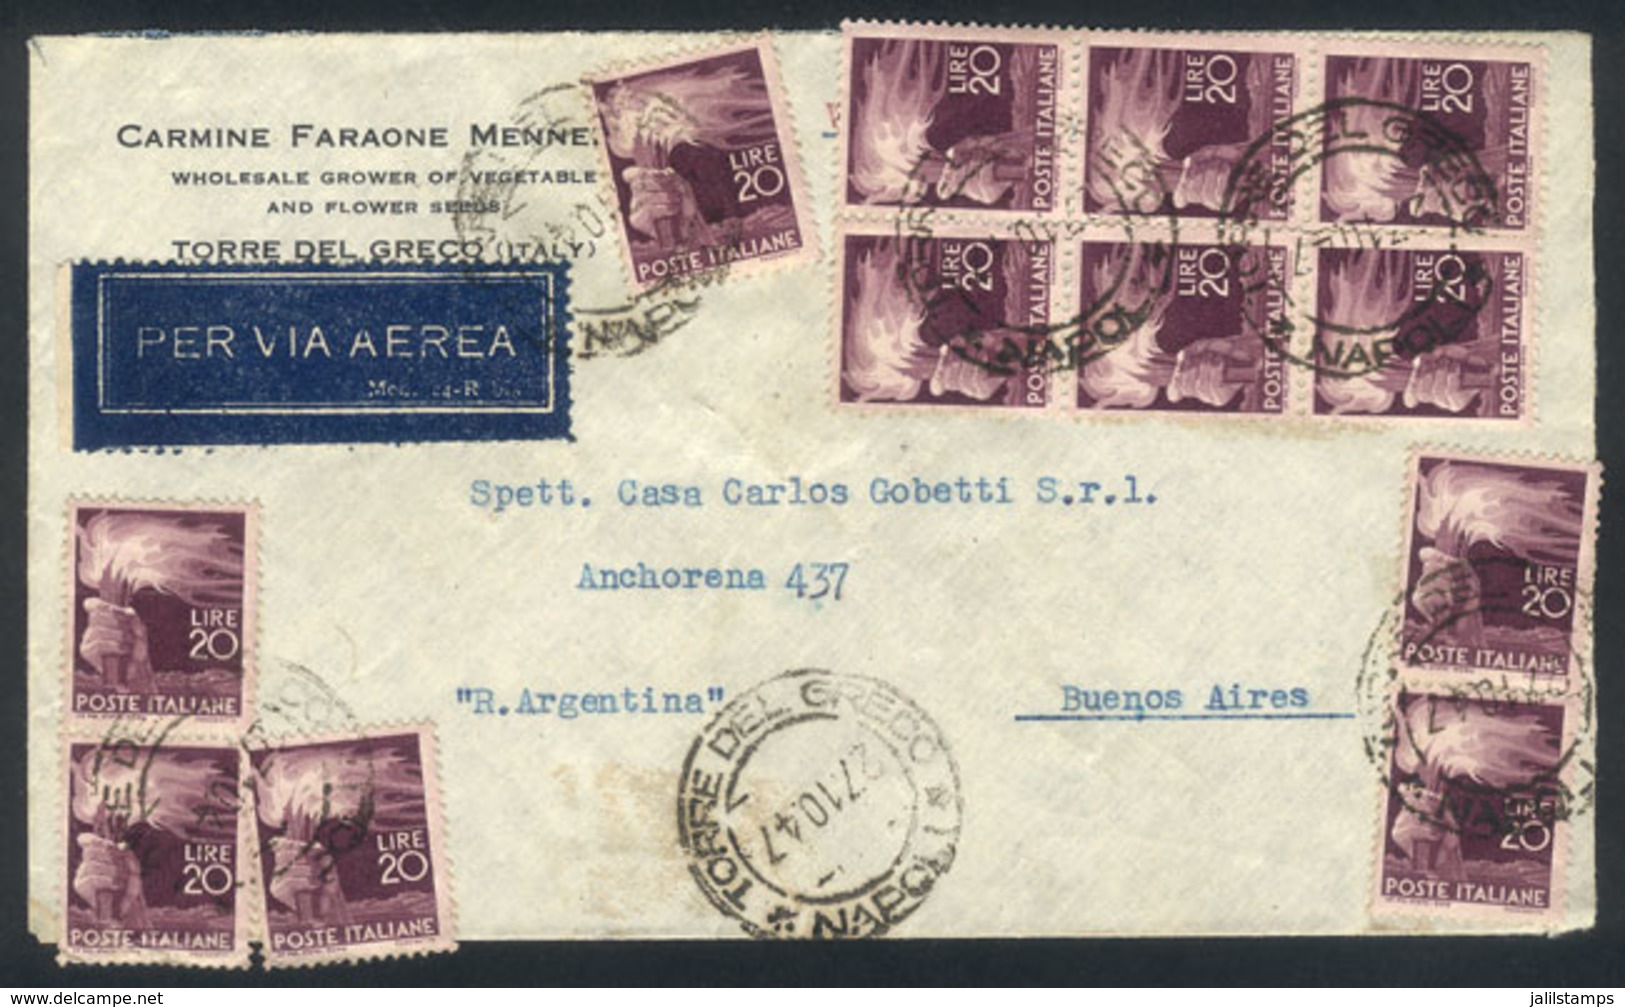 ITALY: 27/OC/1947 TORRE DEL GRECO - Argentina: Airmail Cover Franked With 240 Lire (20L. Democratica X12!!), Fantastic A - Non Classés